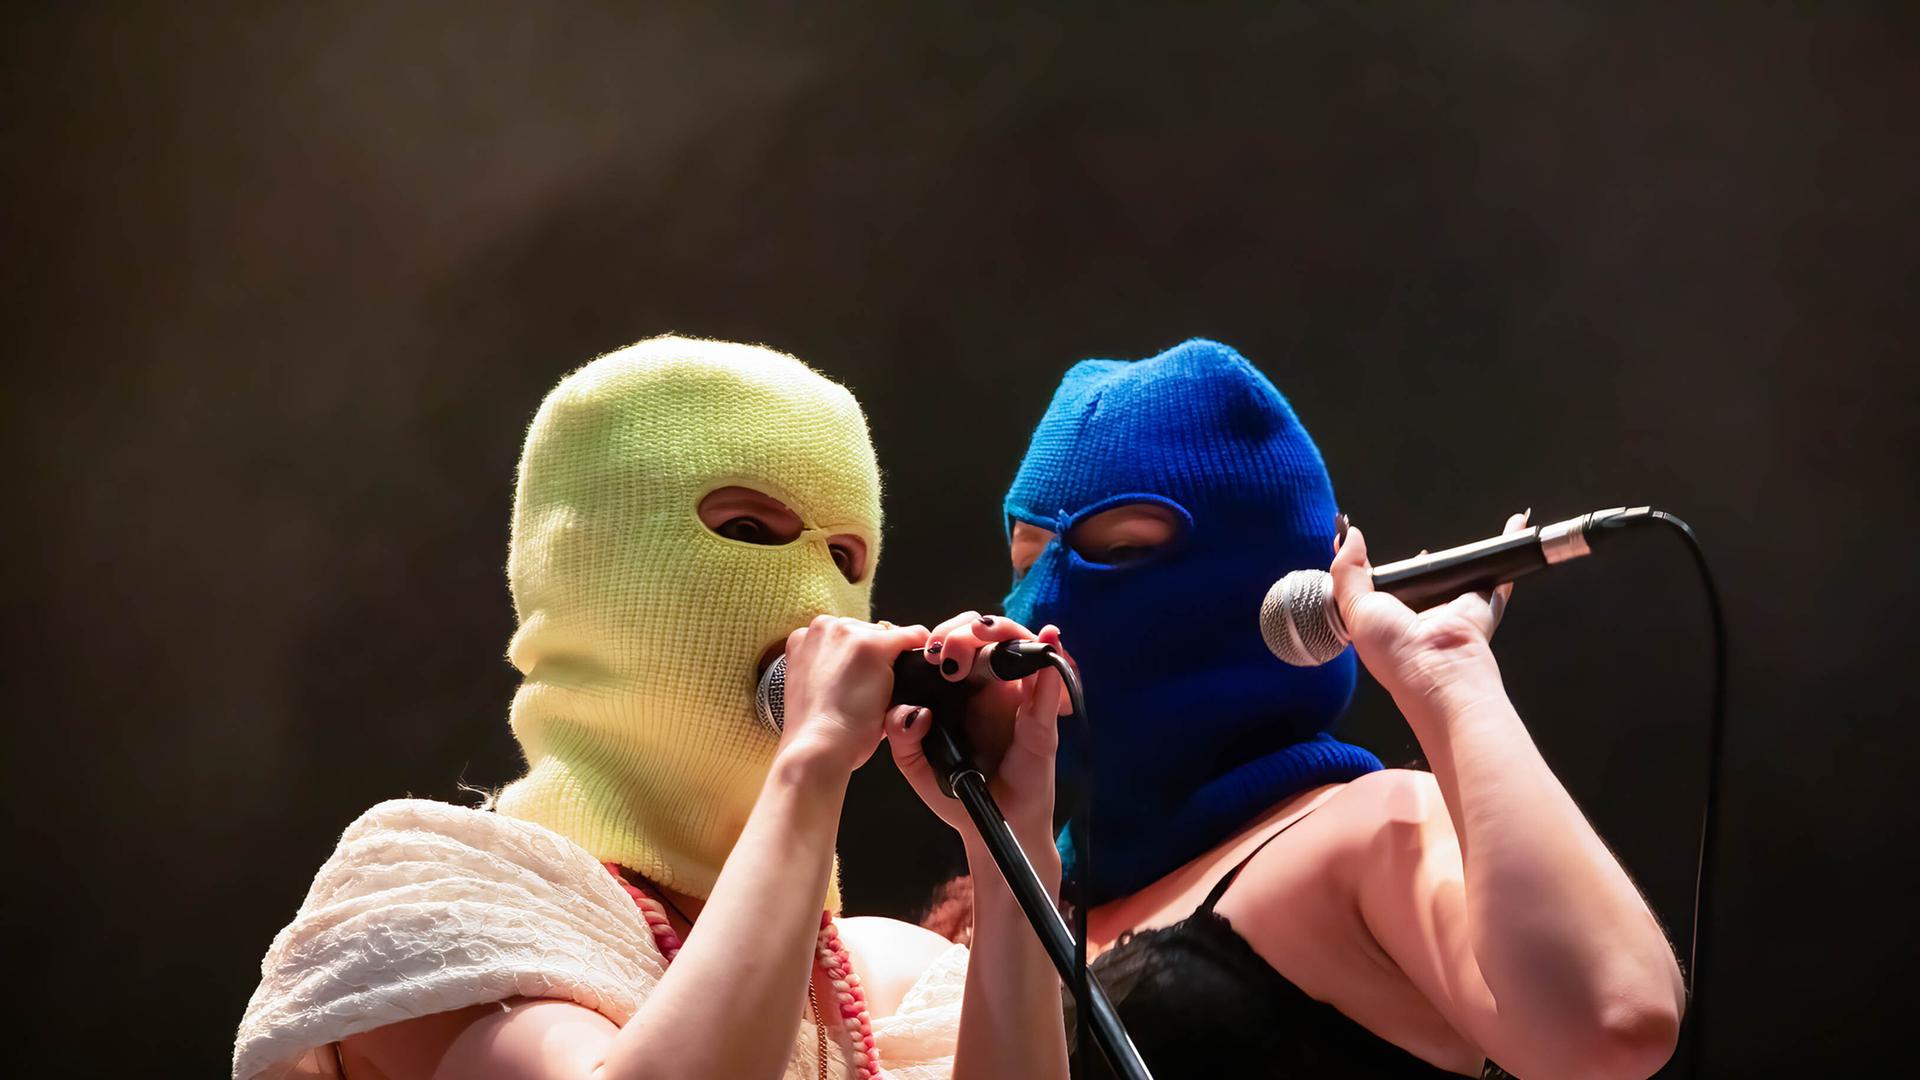 Zwei Frauen stehen auf einer Bühnen und halten ein Mikro in der Hand. Ihre Gesichter kann man nicht erkennen, da sie eine gelbe beziehungsweise blaue Sturmhaube über den Kopf gezogen haben.